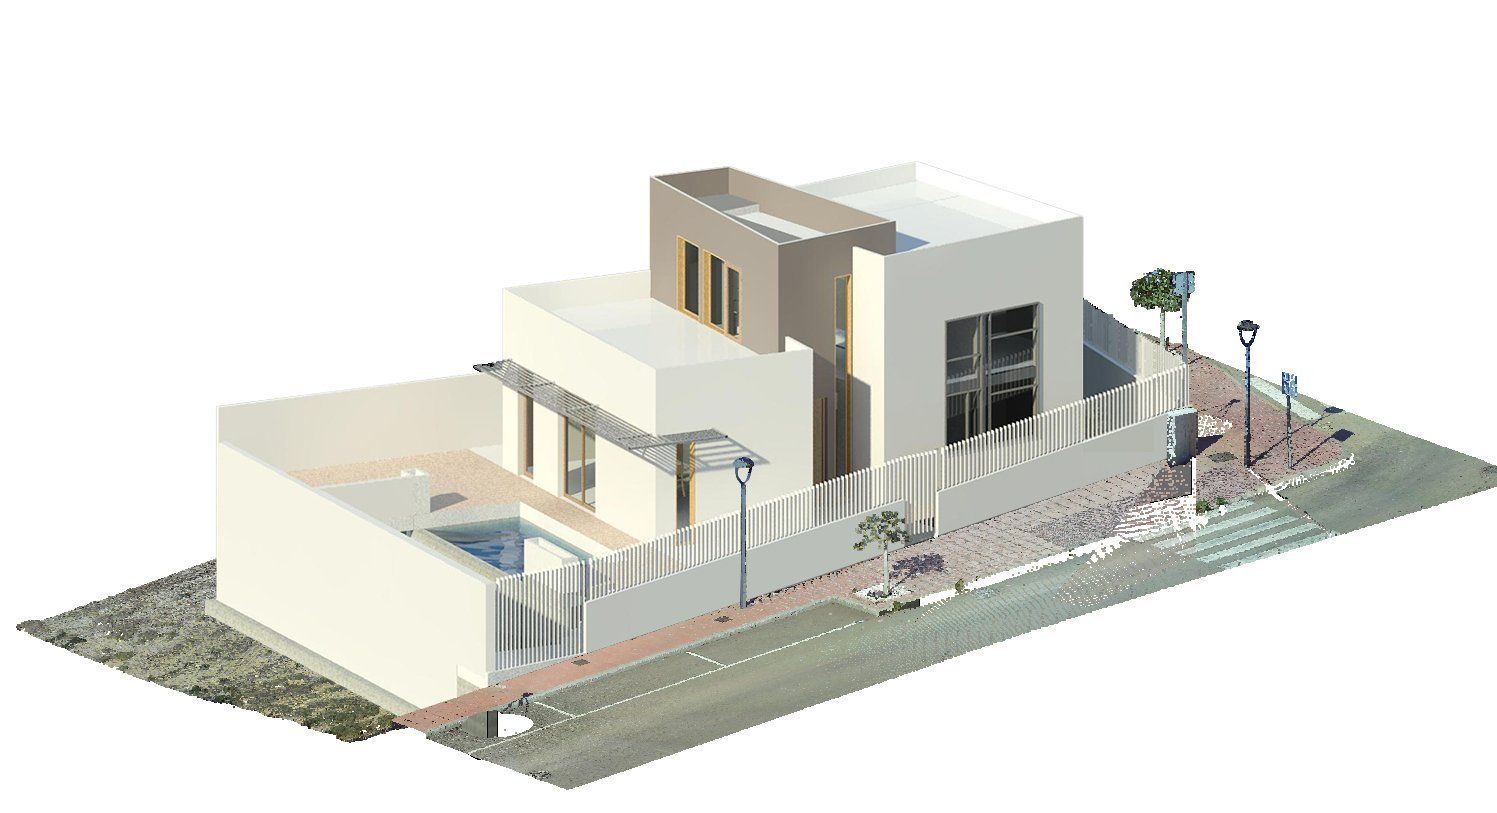 Diseño en vivienda unifamiliar moderna en Almeria. Arquitectura moderna en Almeria. Interiorismo Almeria.